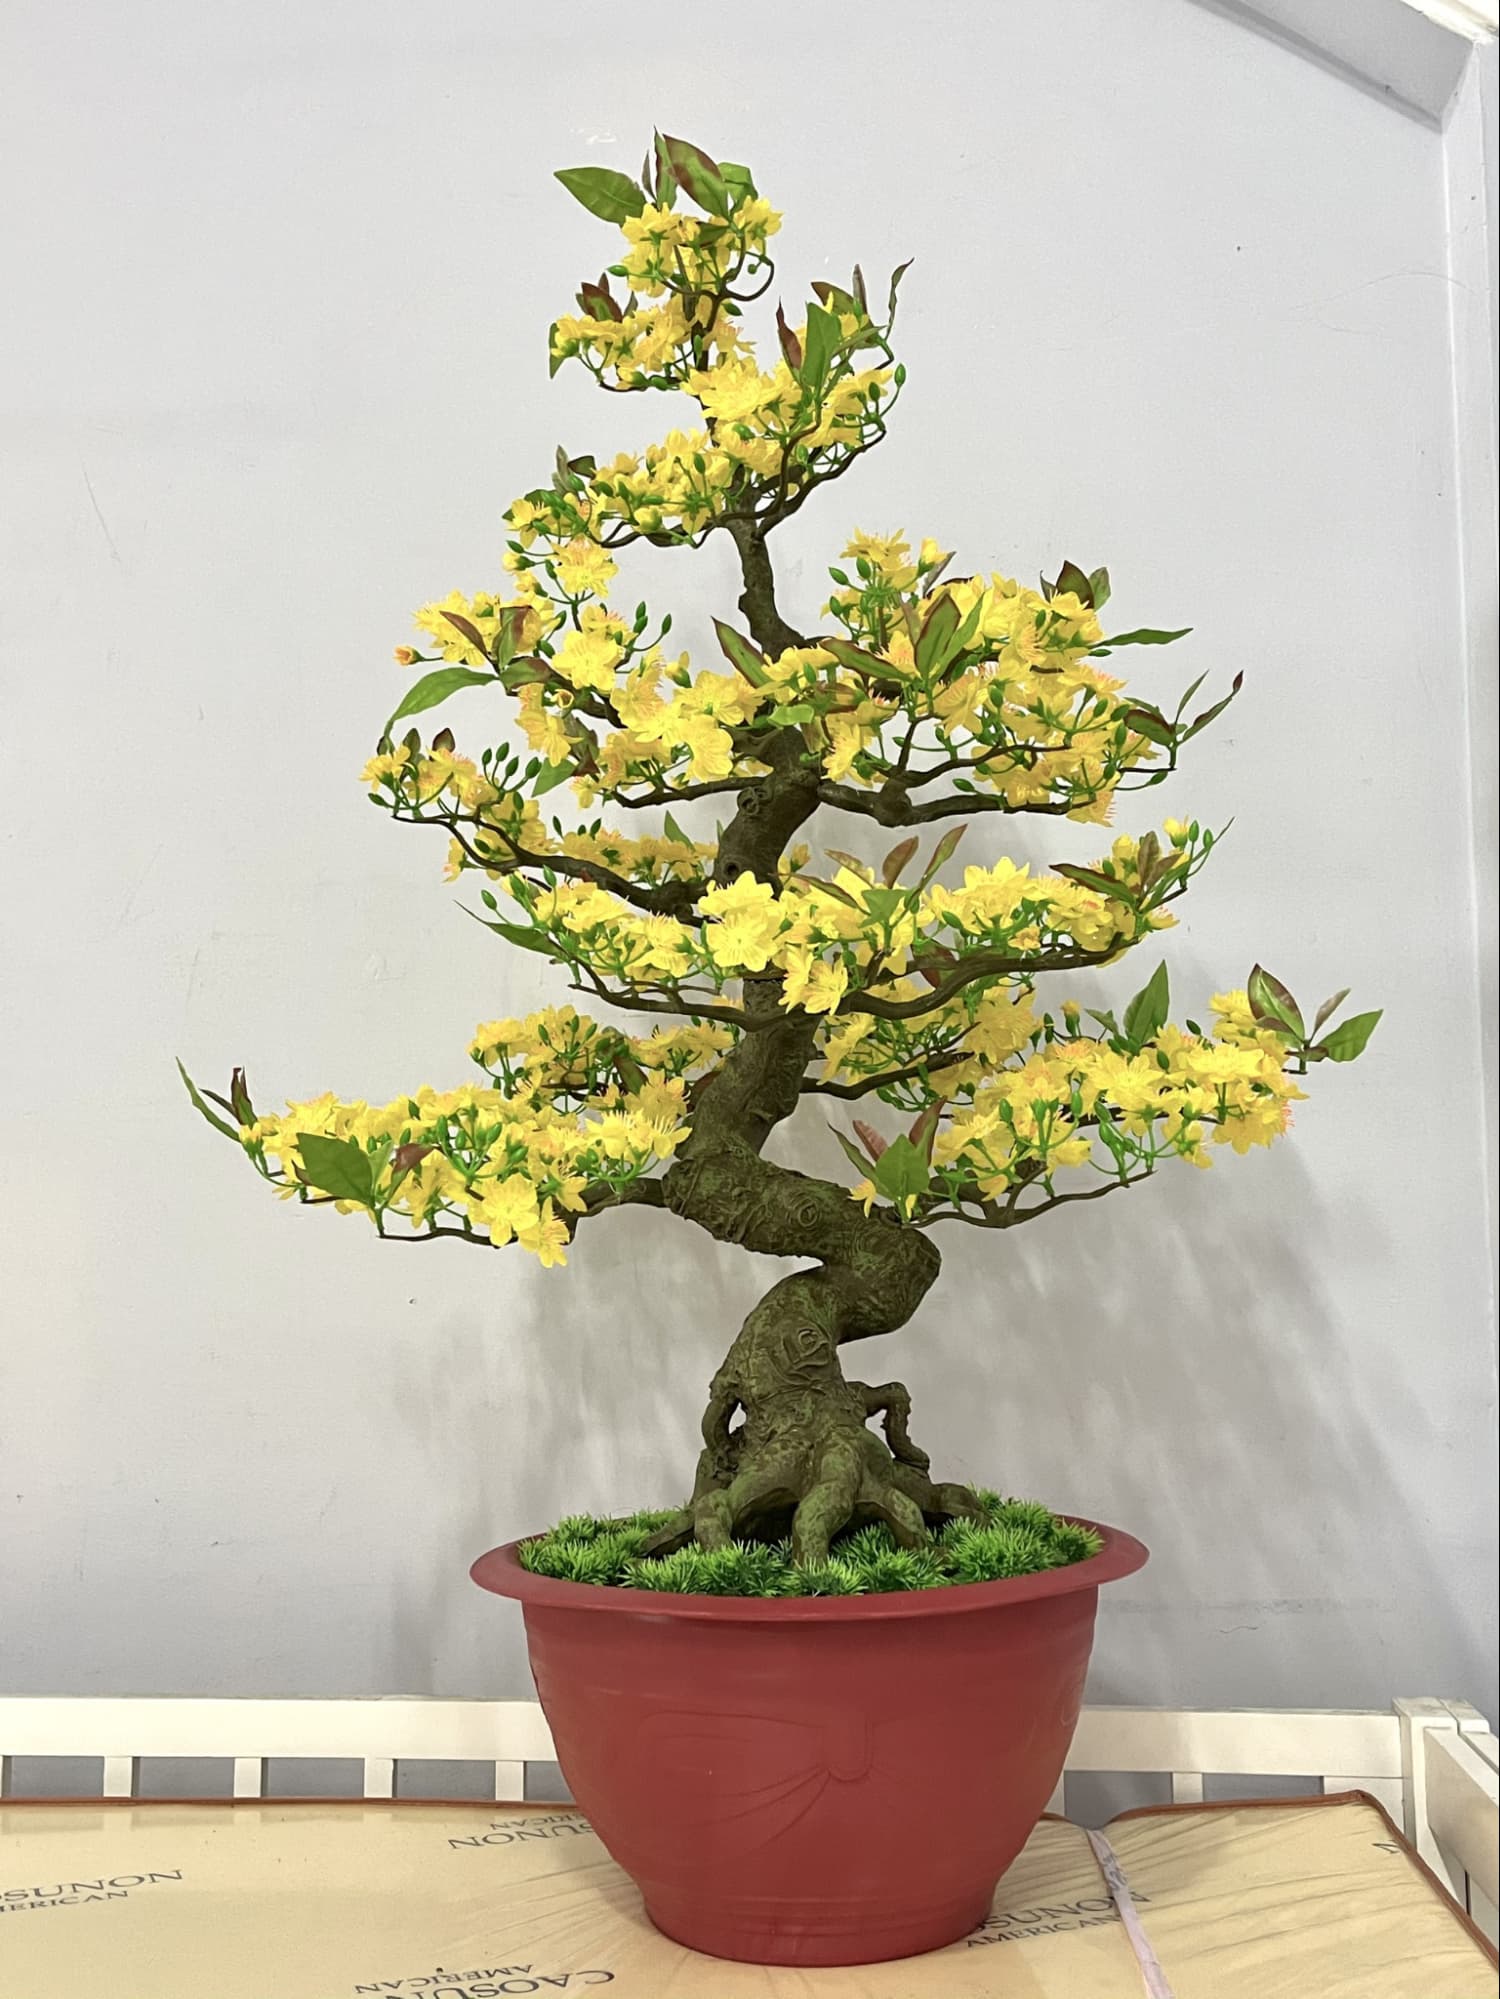 Thiết kế cây mai giả dáng bonsai uyển chuyển, mềm mại